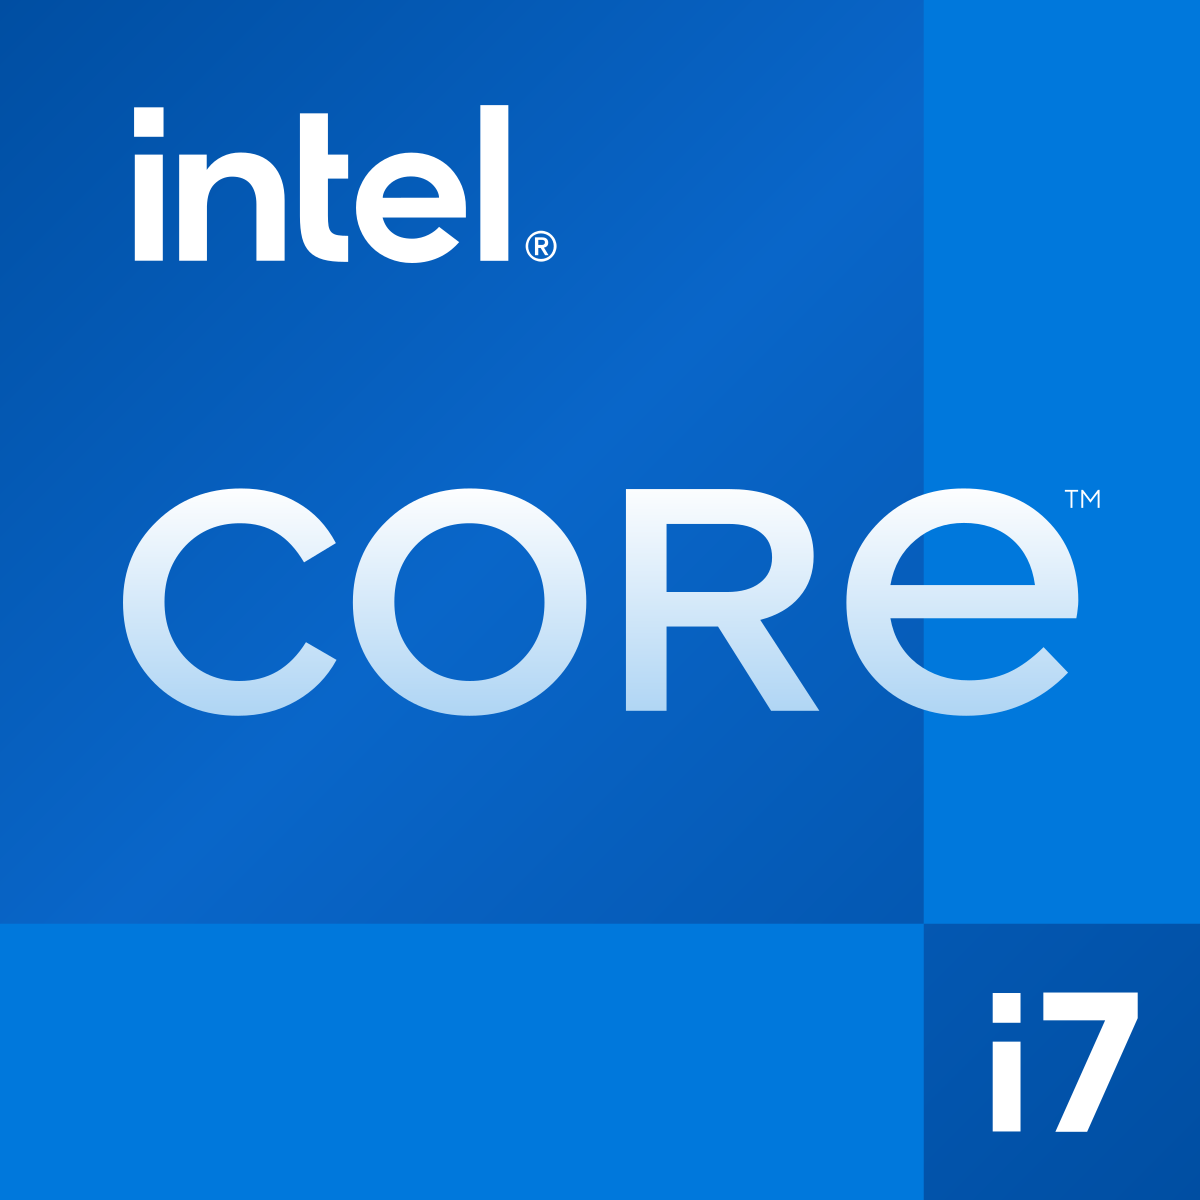 Intel Core i7 - Wikipedia